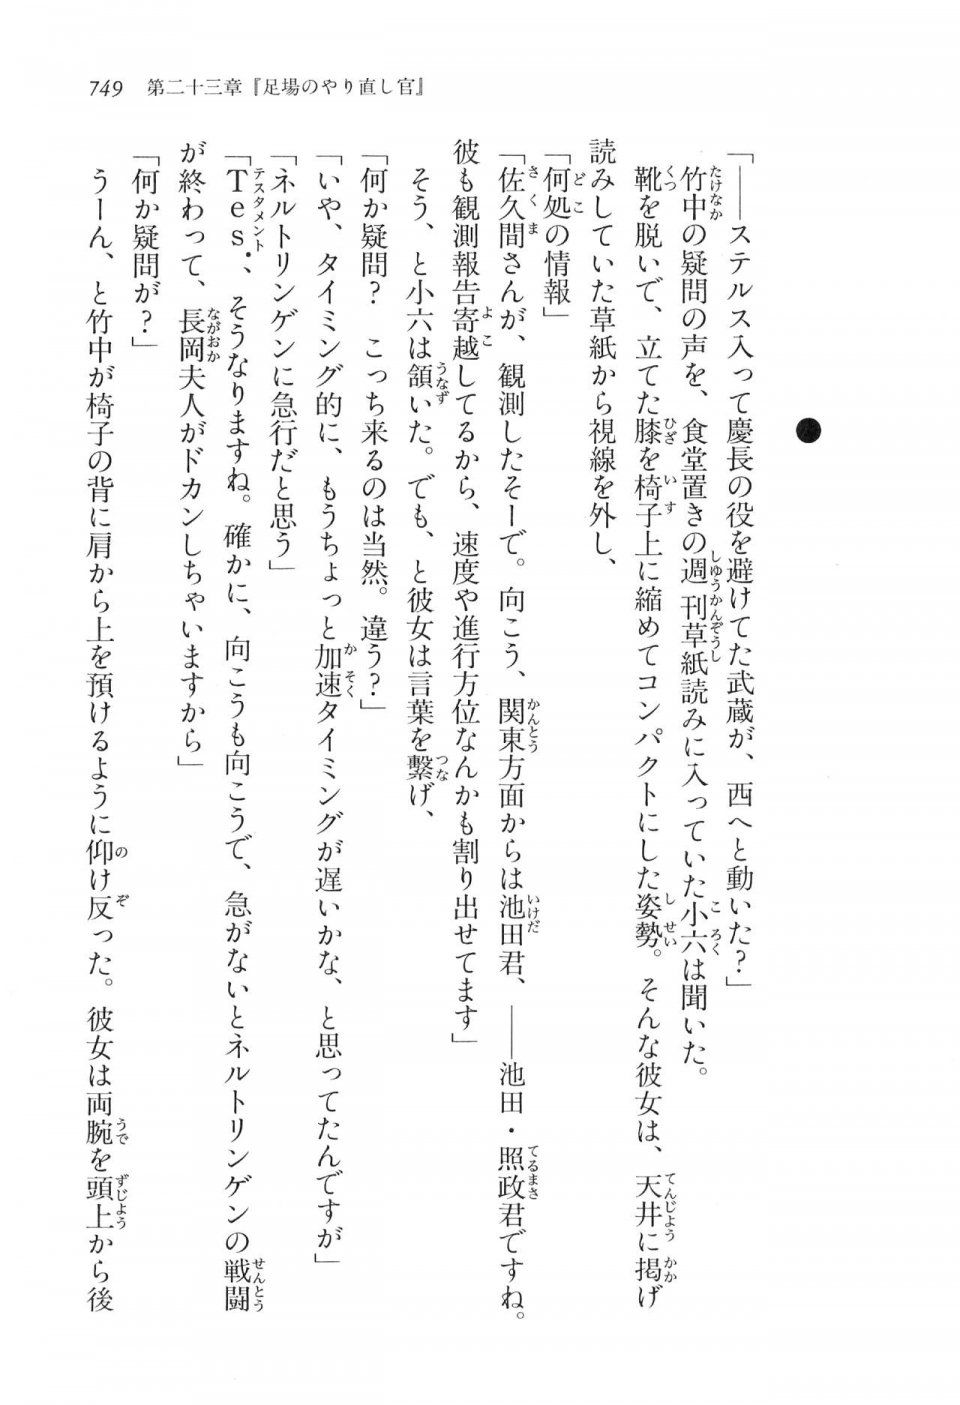 Kyoukai Senjou no Horizon LN Vol 16(7A) - Photo #749